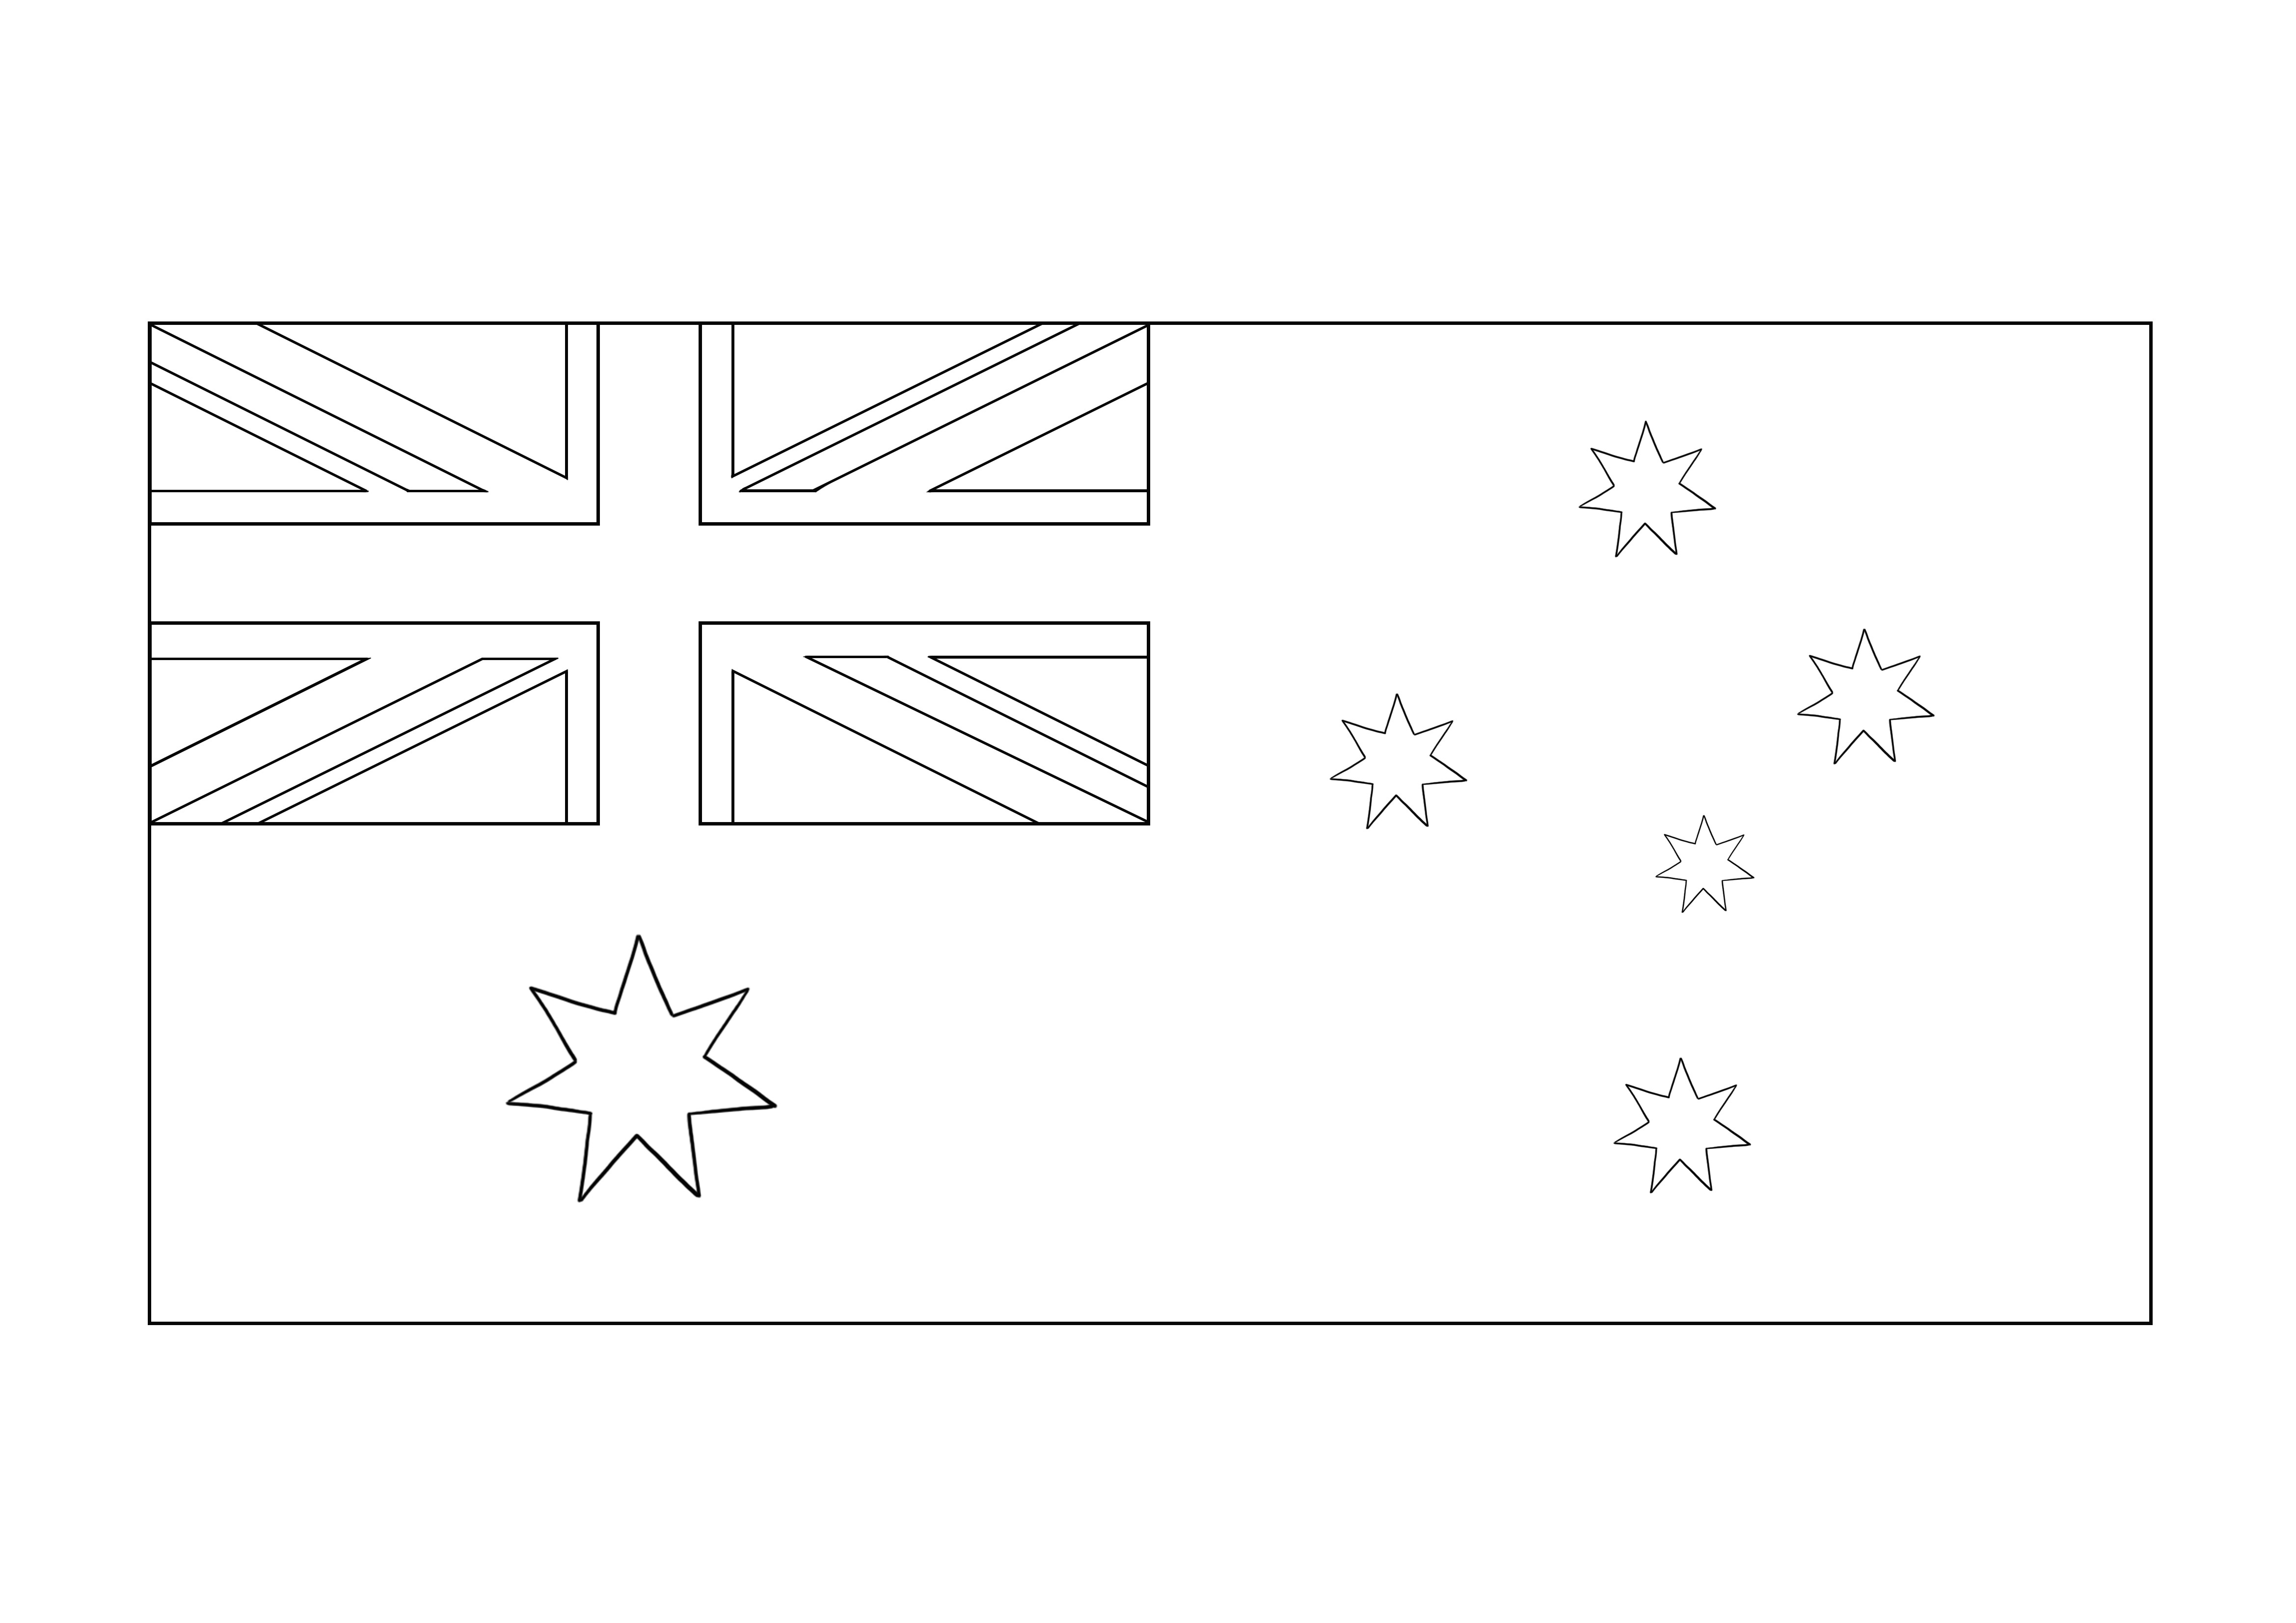 Lembar mewarnai Bendera Australia gratis untuk diunduh dan dipelajari tentang Australia